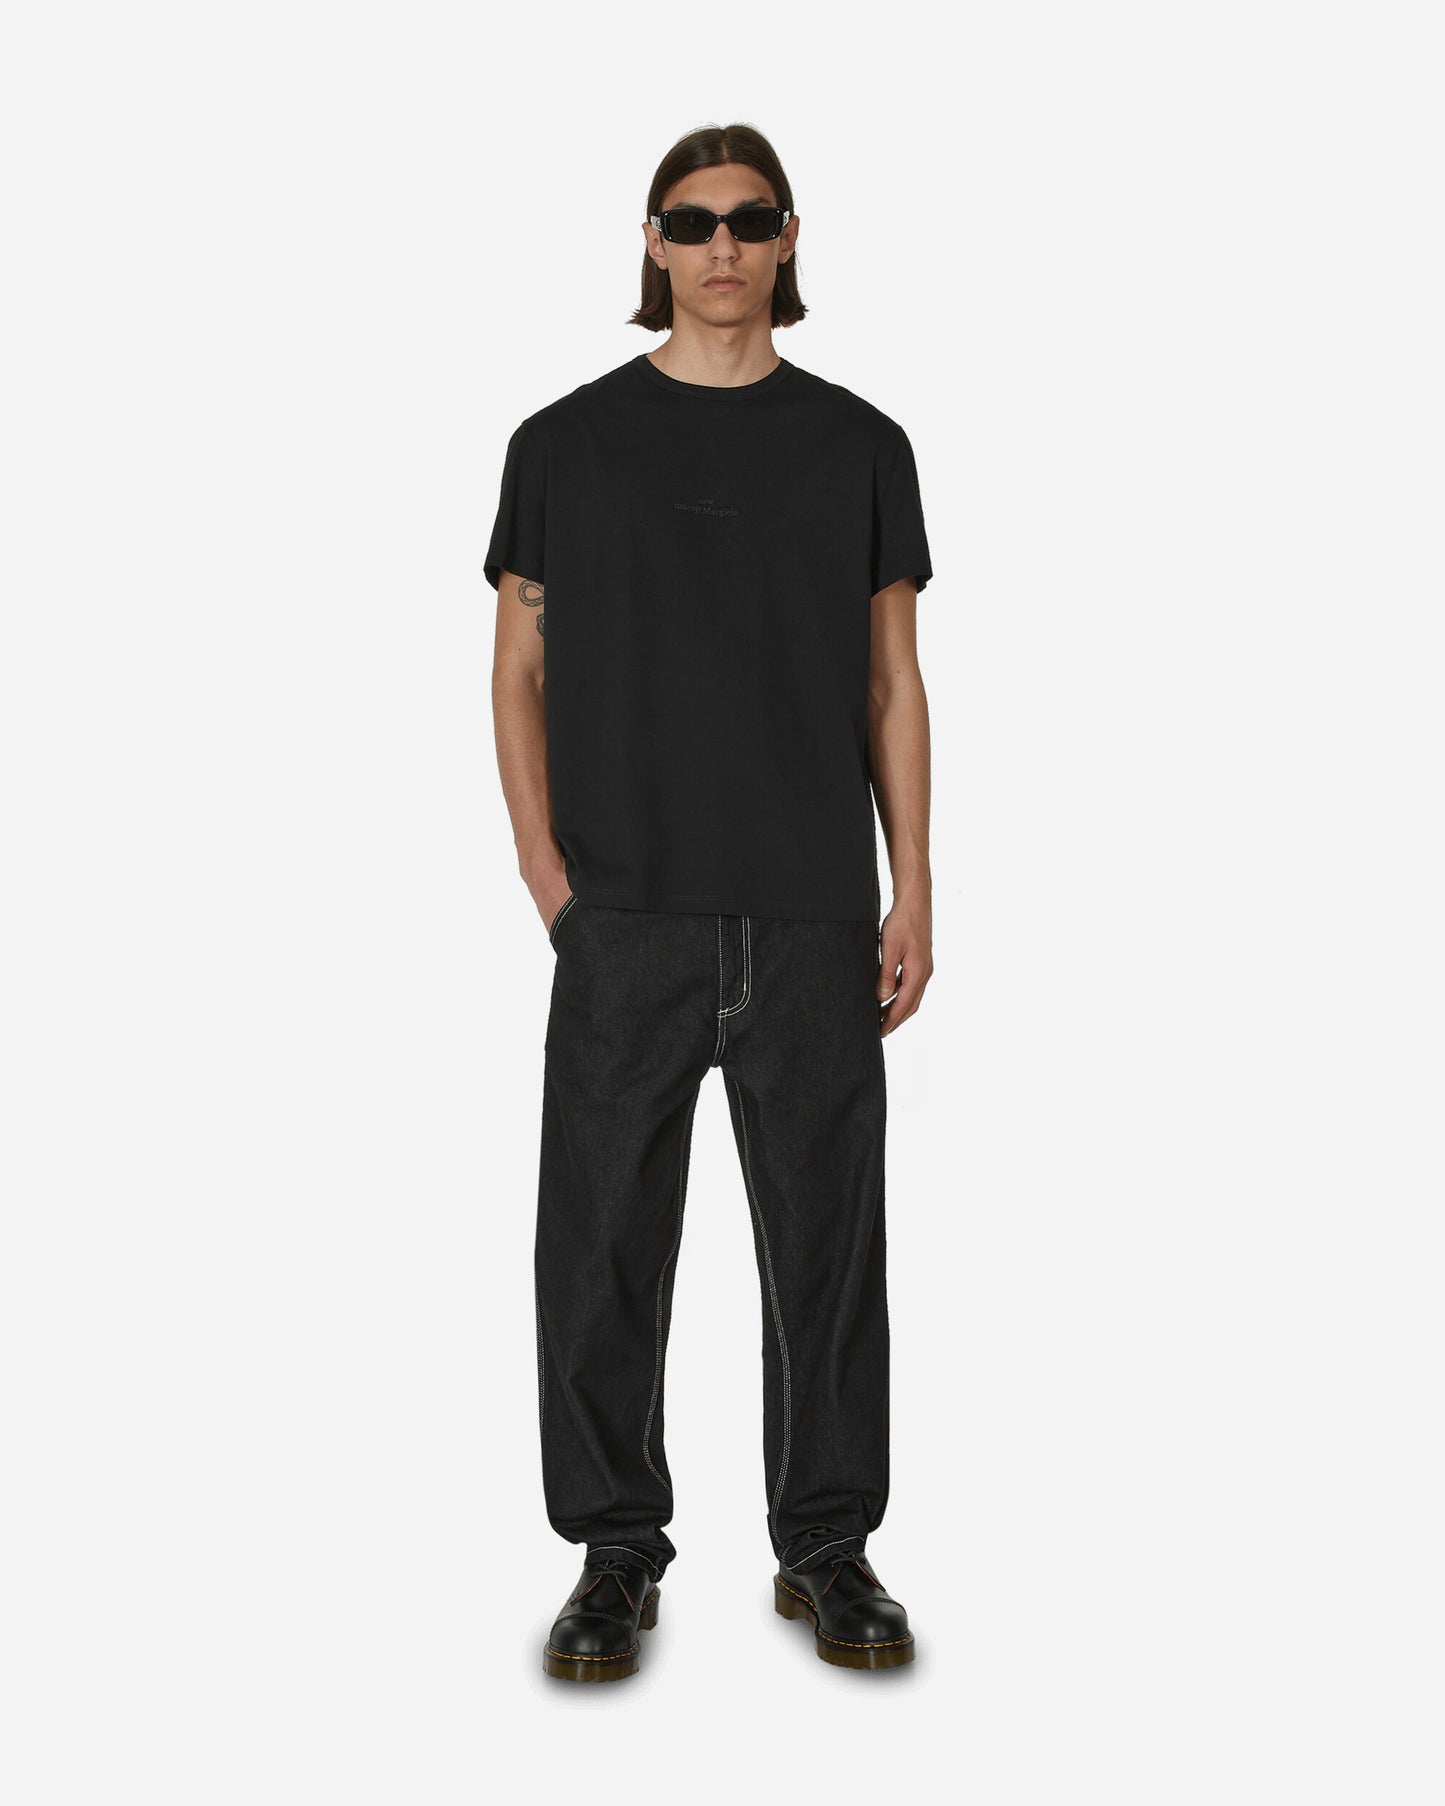 Maison Margiela T-Shirt Black T-Shirts Shortsleeve S50GC0681 900